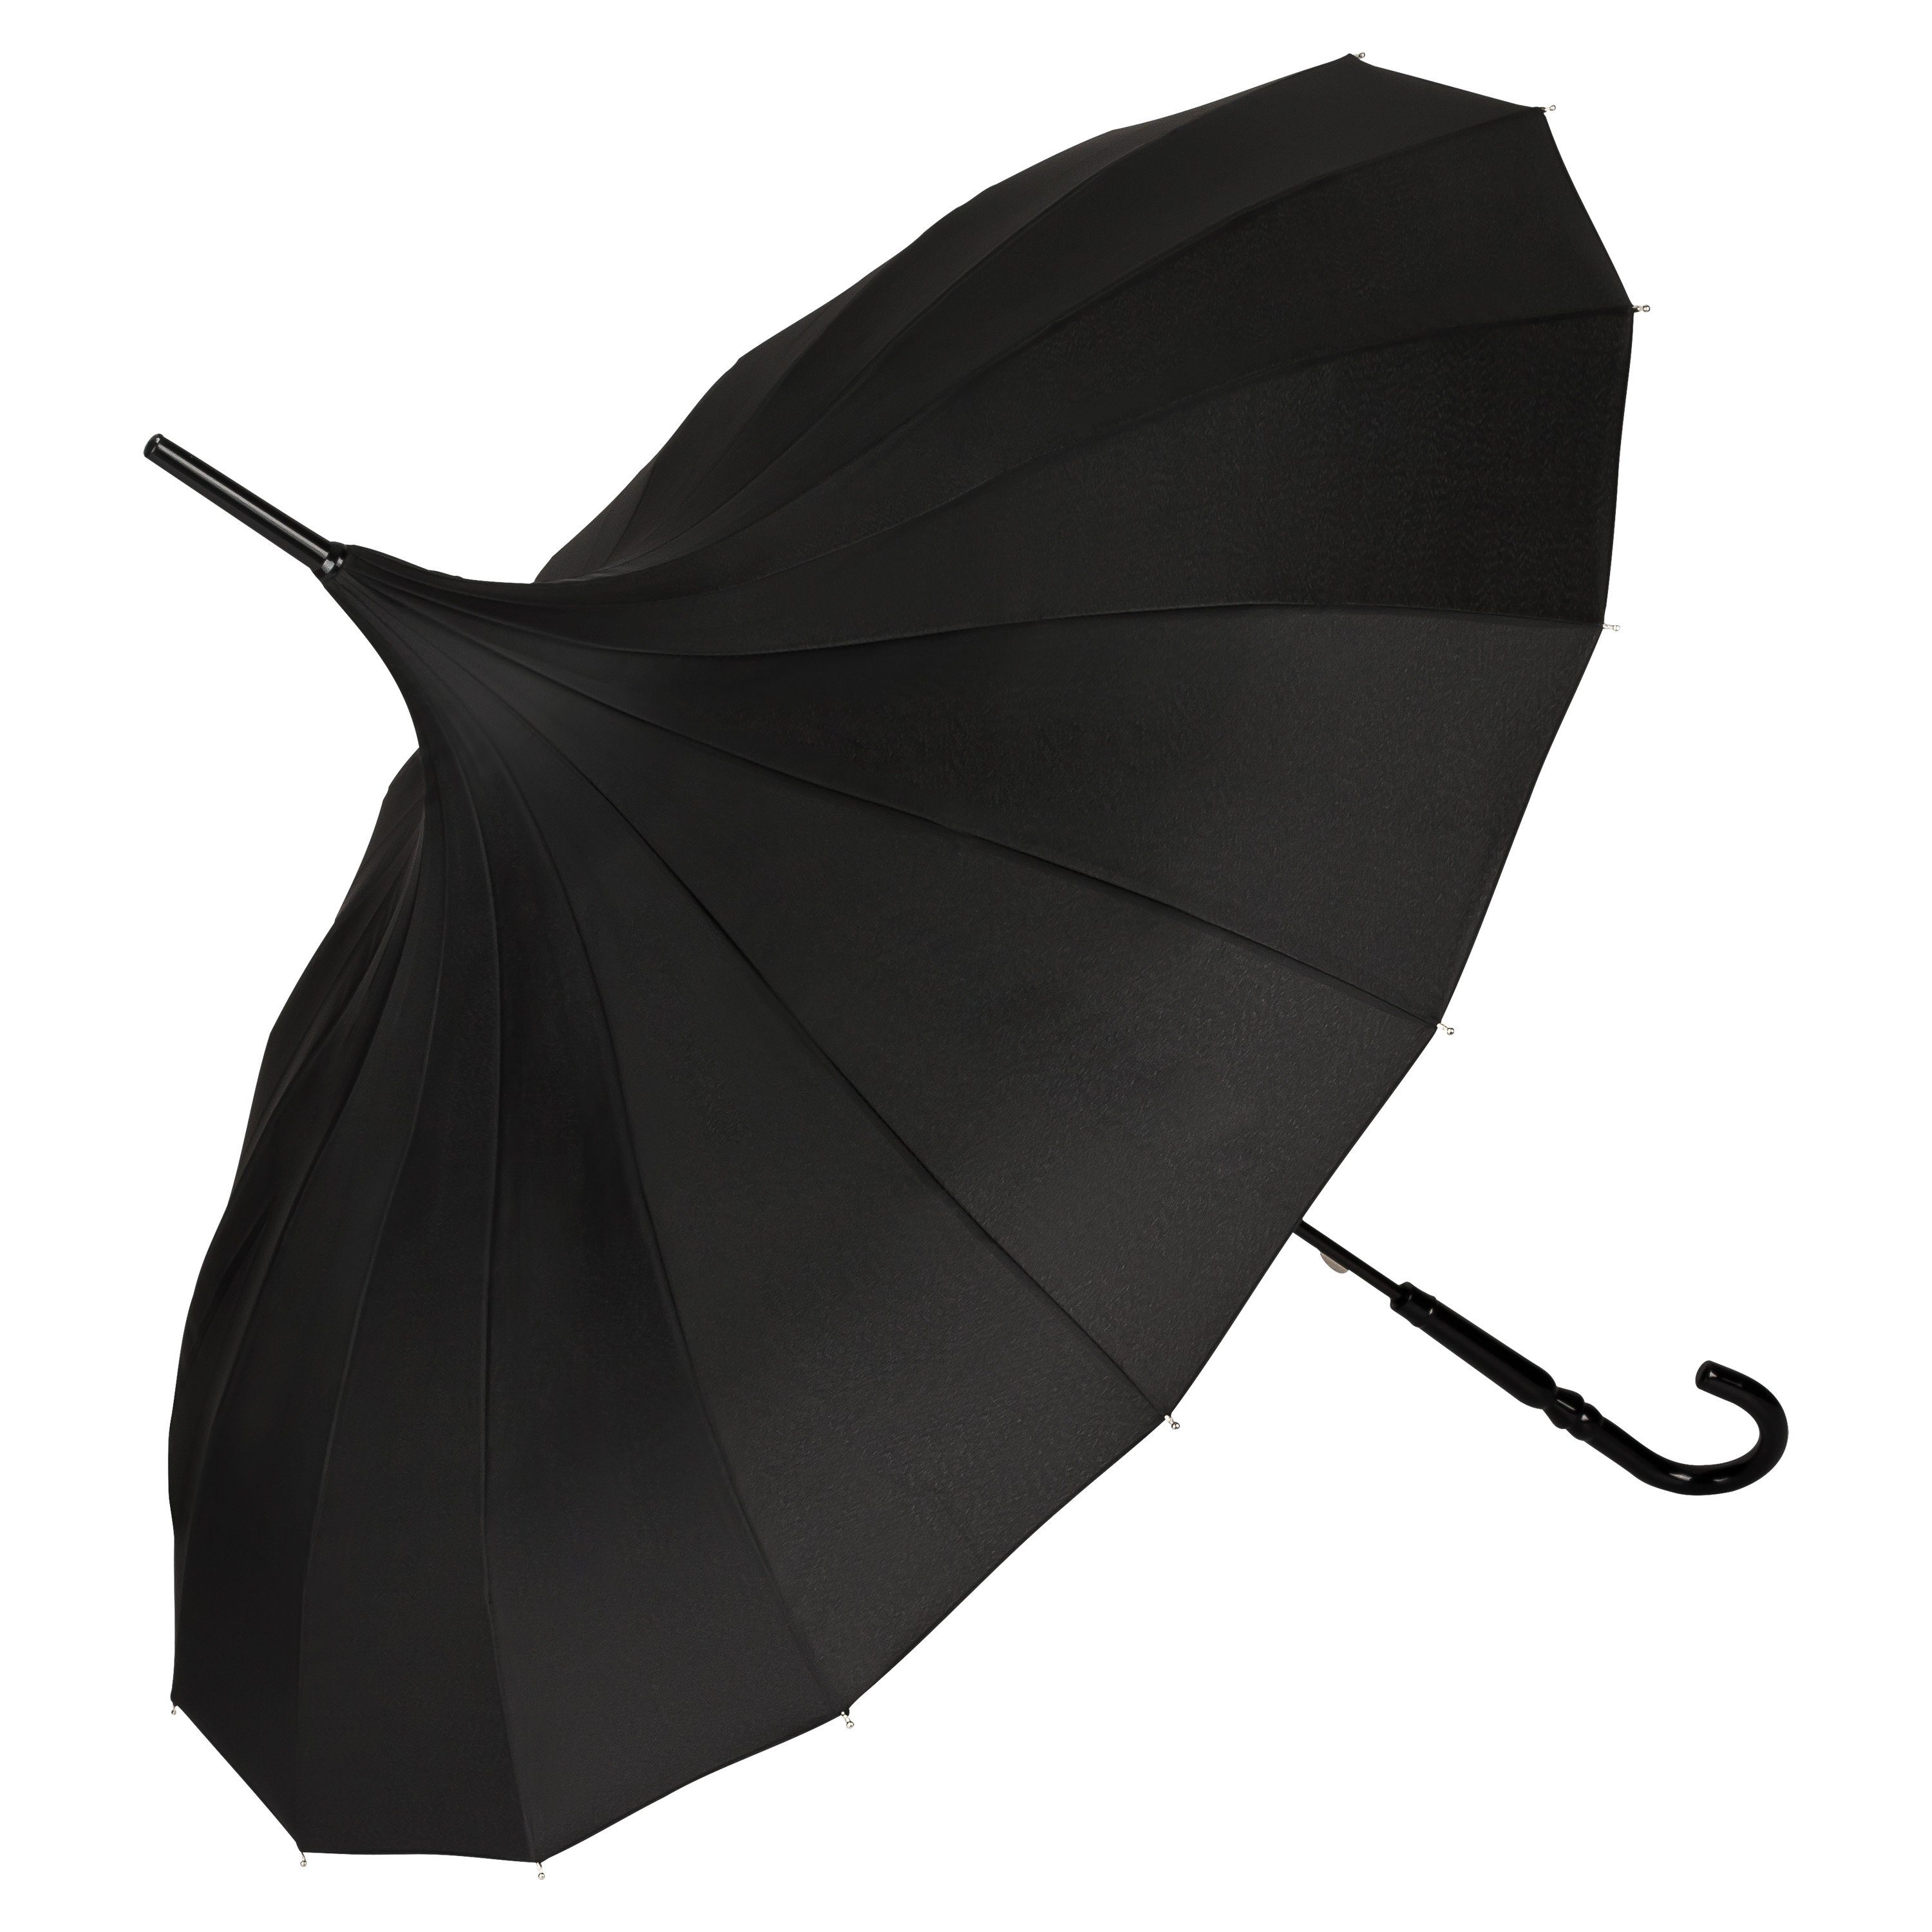 von Lilienfeld Stockregenschirm Regenschirm Sonnenschirm Pagode Charlotte, Pagodenform mit 16 Segmenten schwarz